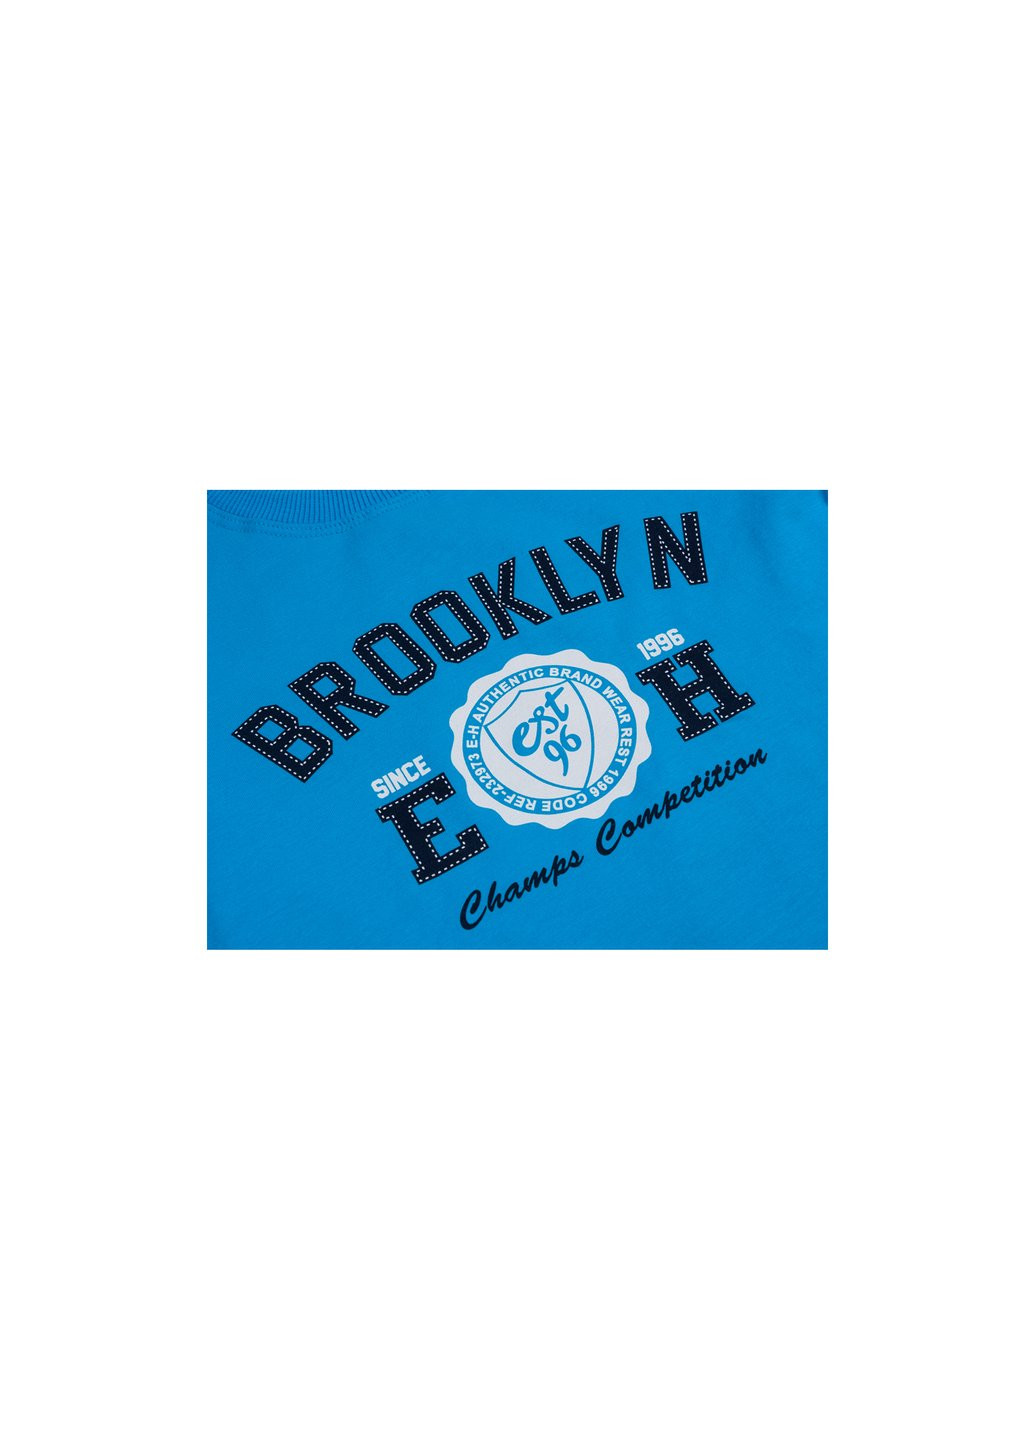 Голубой демисезонный набор детской одежды кофта и брюки голубой " brooklyn" (7882-98b-blue) Breeze